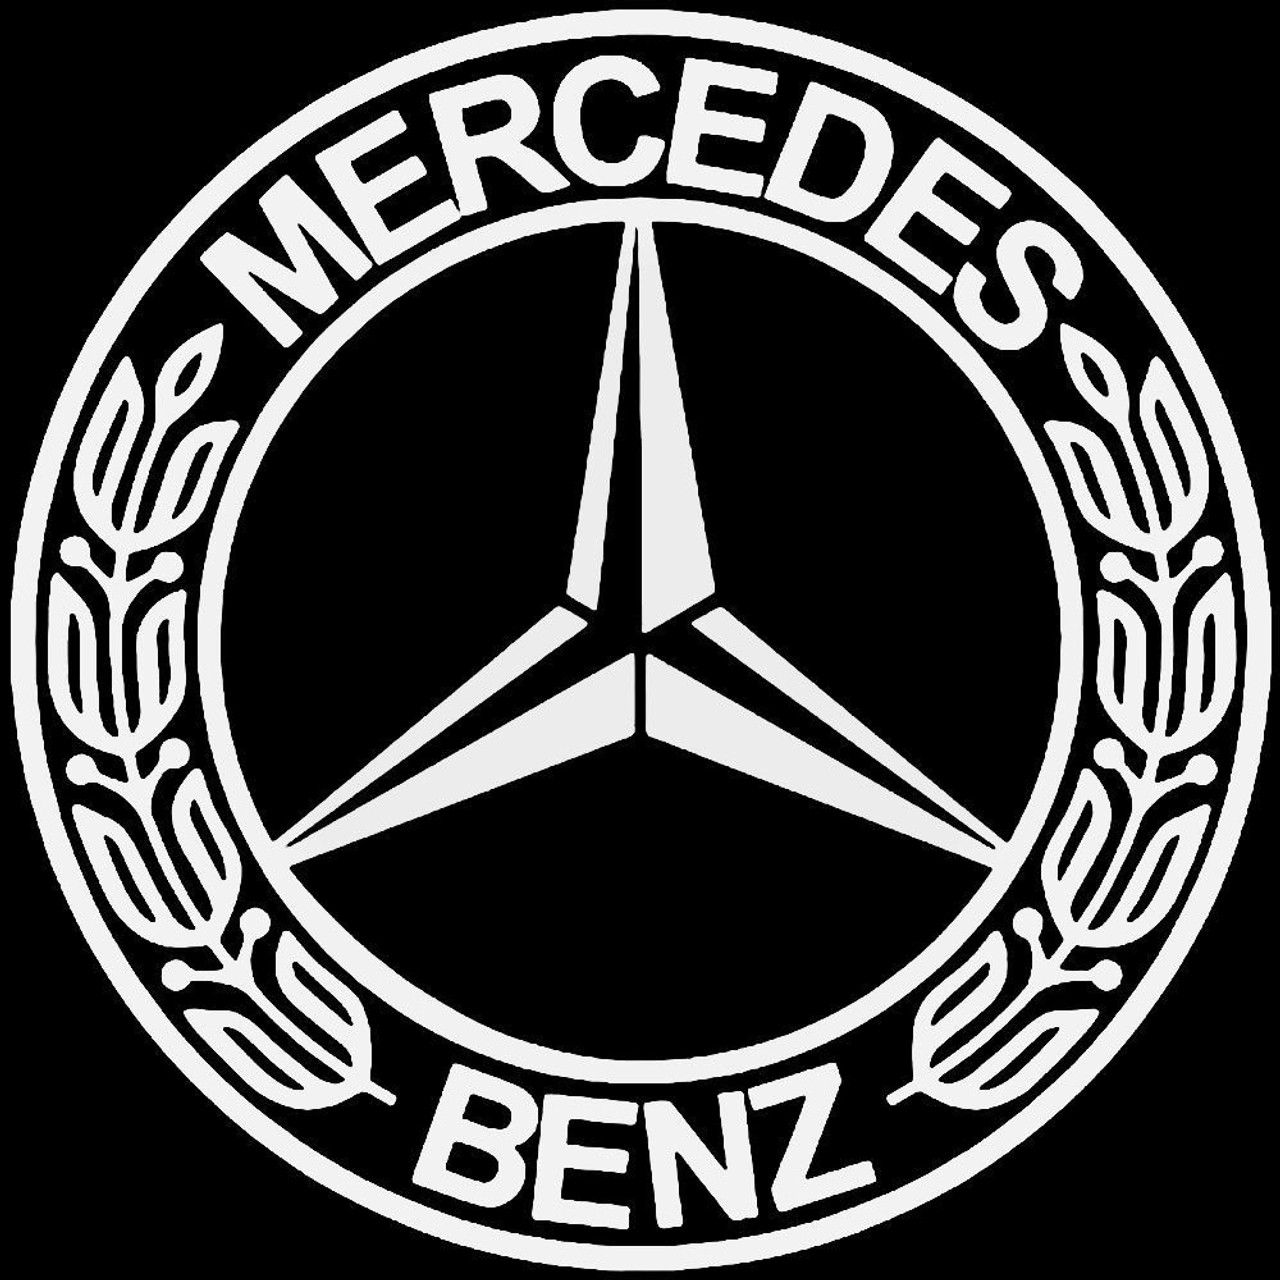 een vuurtje stoken vragenlijst cocaïne Mercedes Benz Emblem Vinyl Decal Sticker